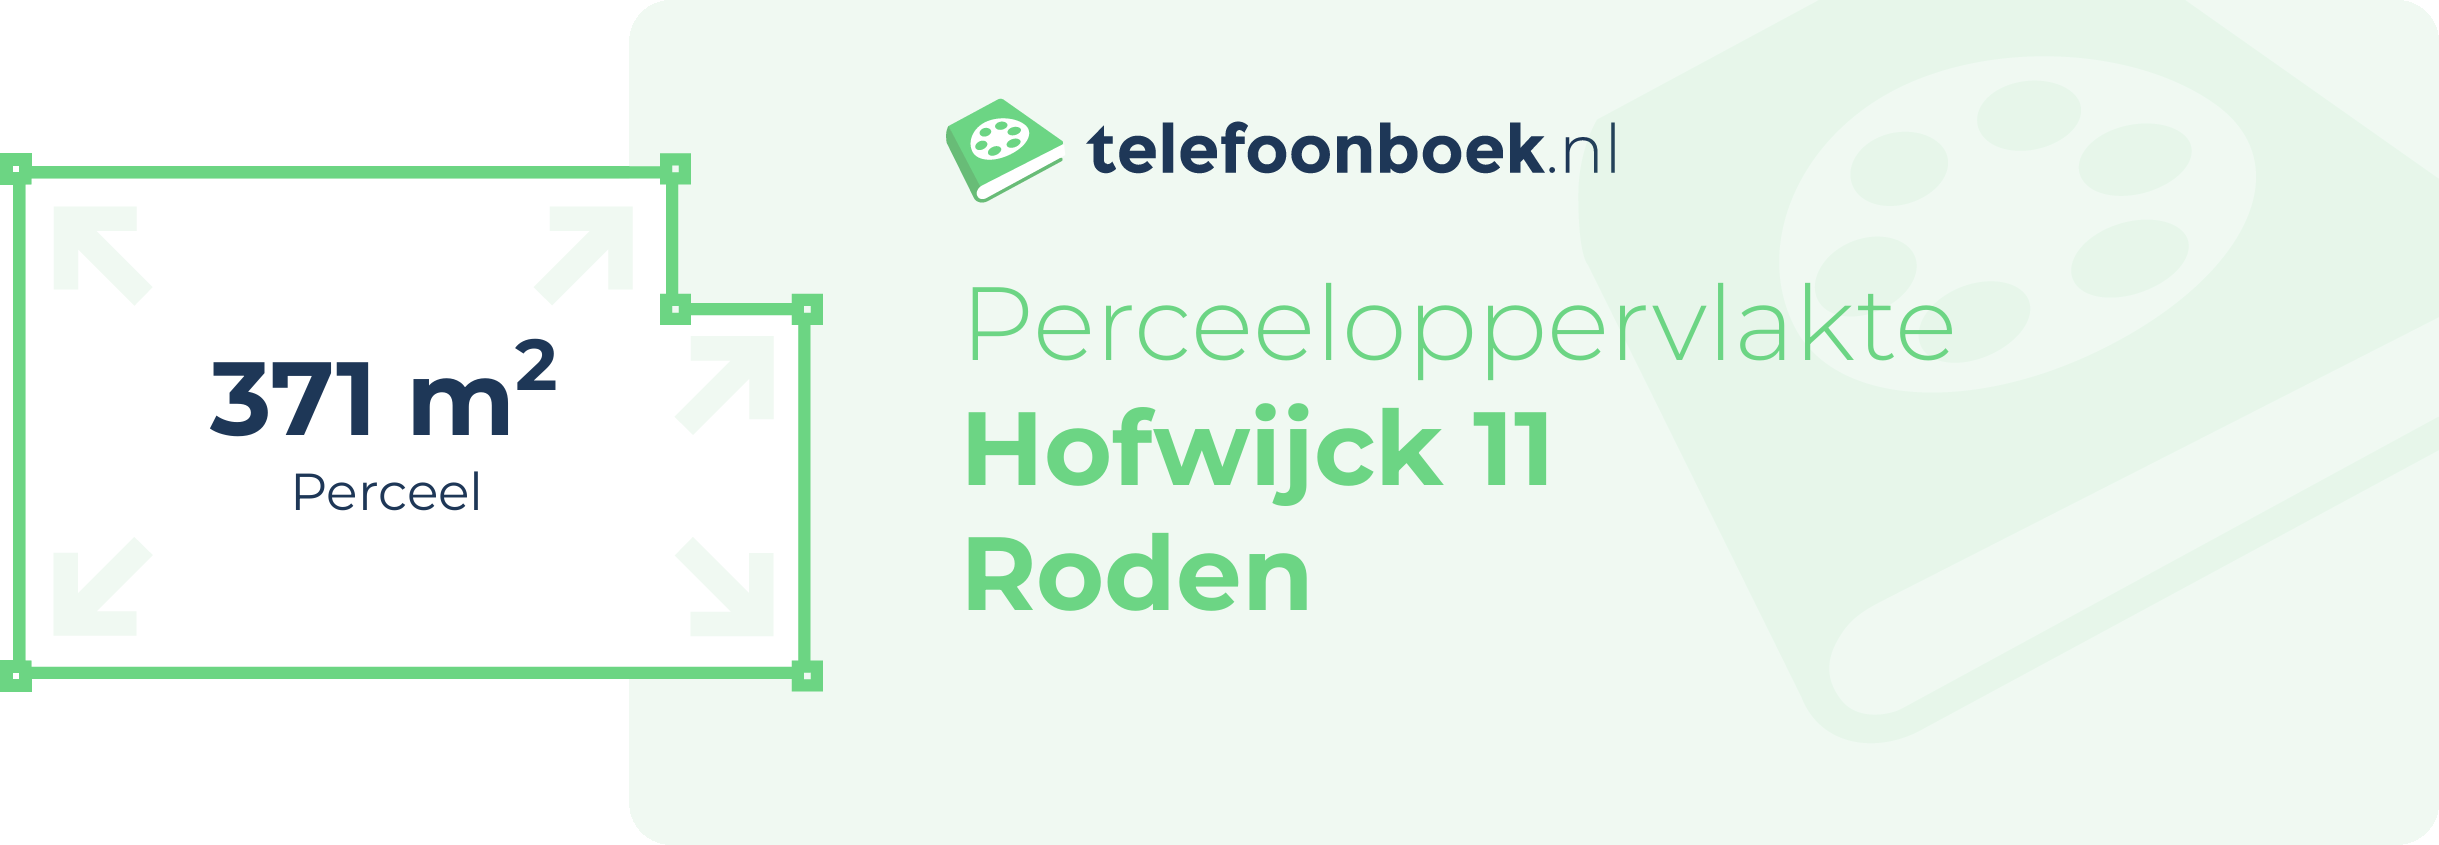 Perceeloppervlakte Hofwijck 11 Roden